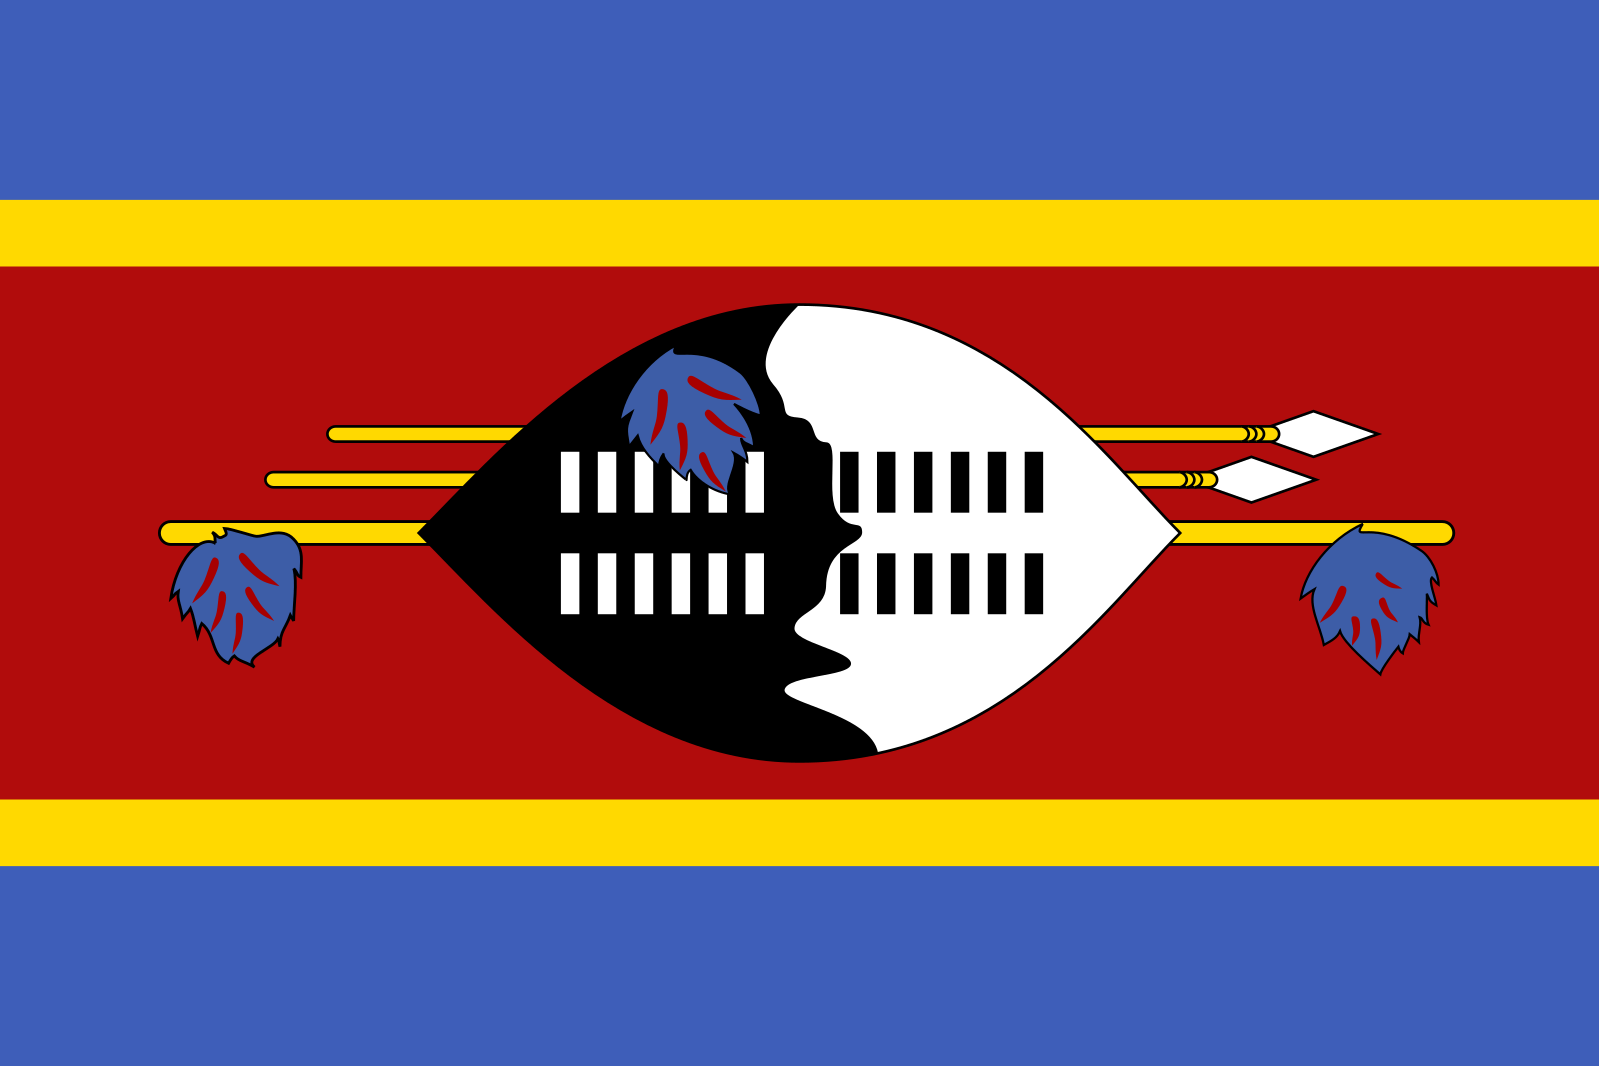 Flagge Eswatini